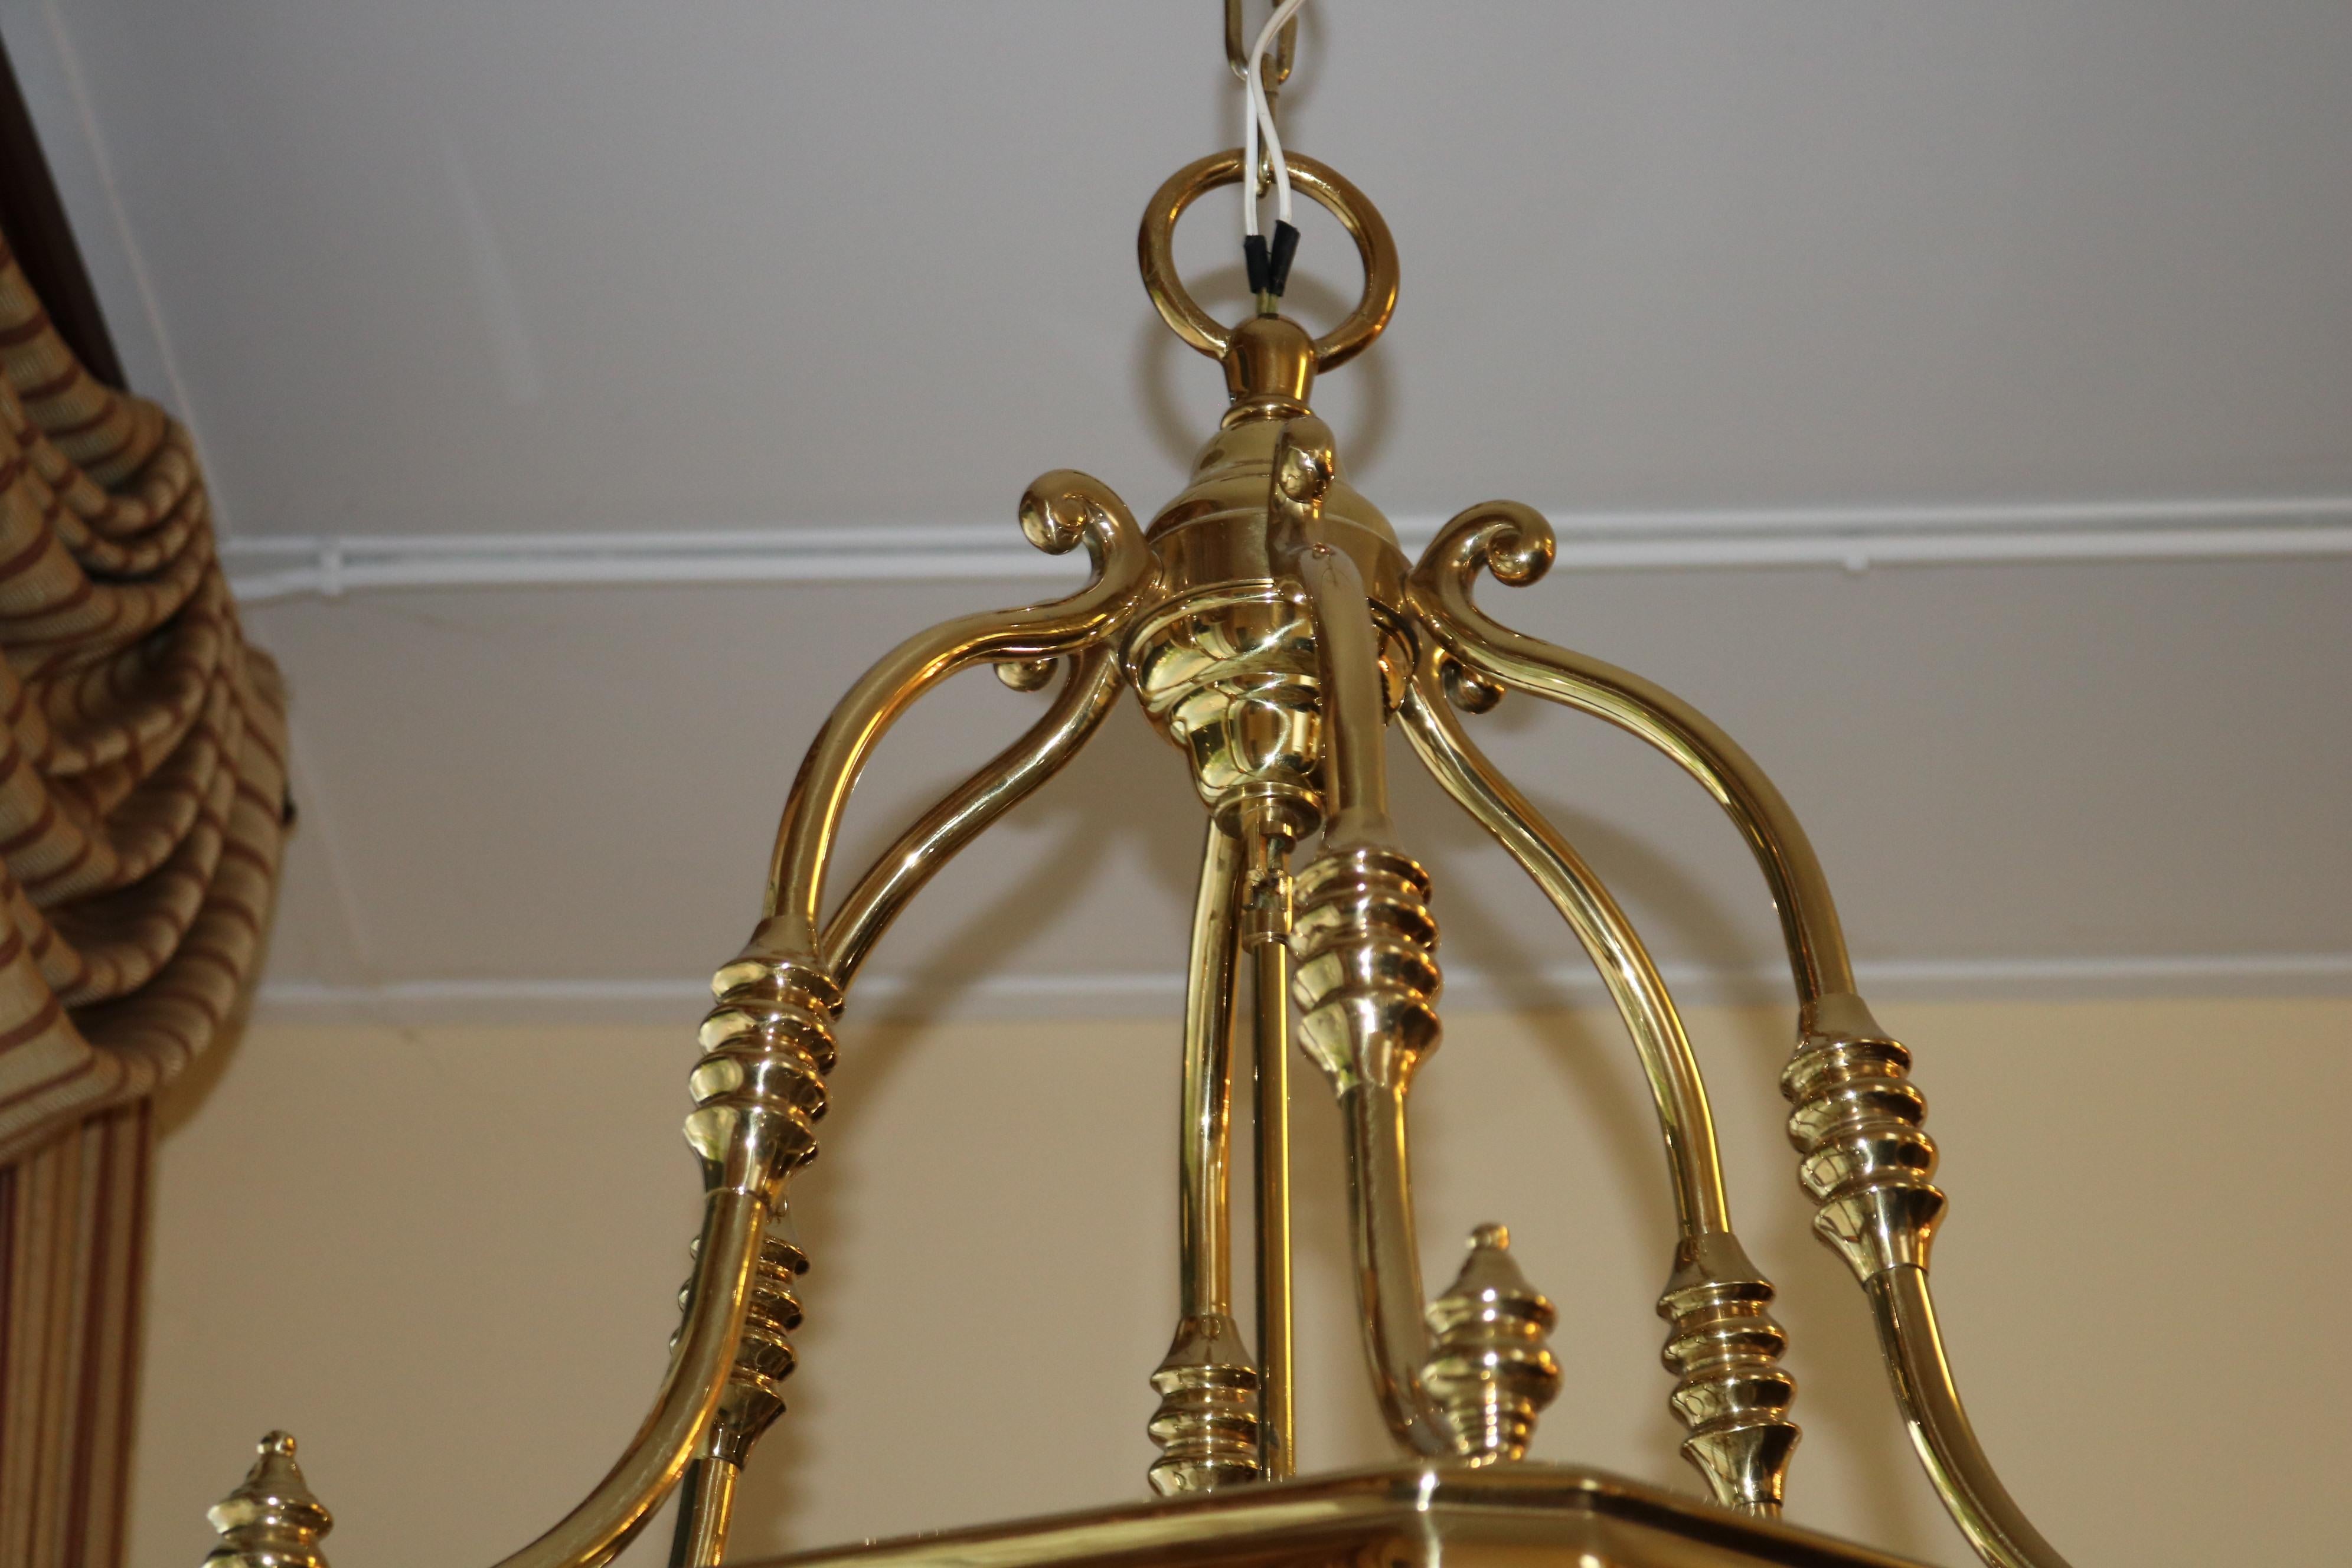 Monumental Over 4 FT Tall 12 Light Brass & Glass Chandelier Lantern For Sale 5